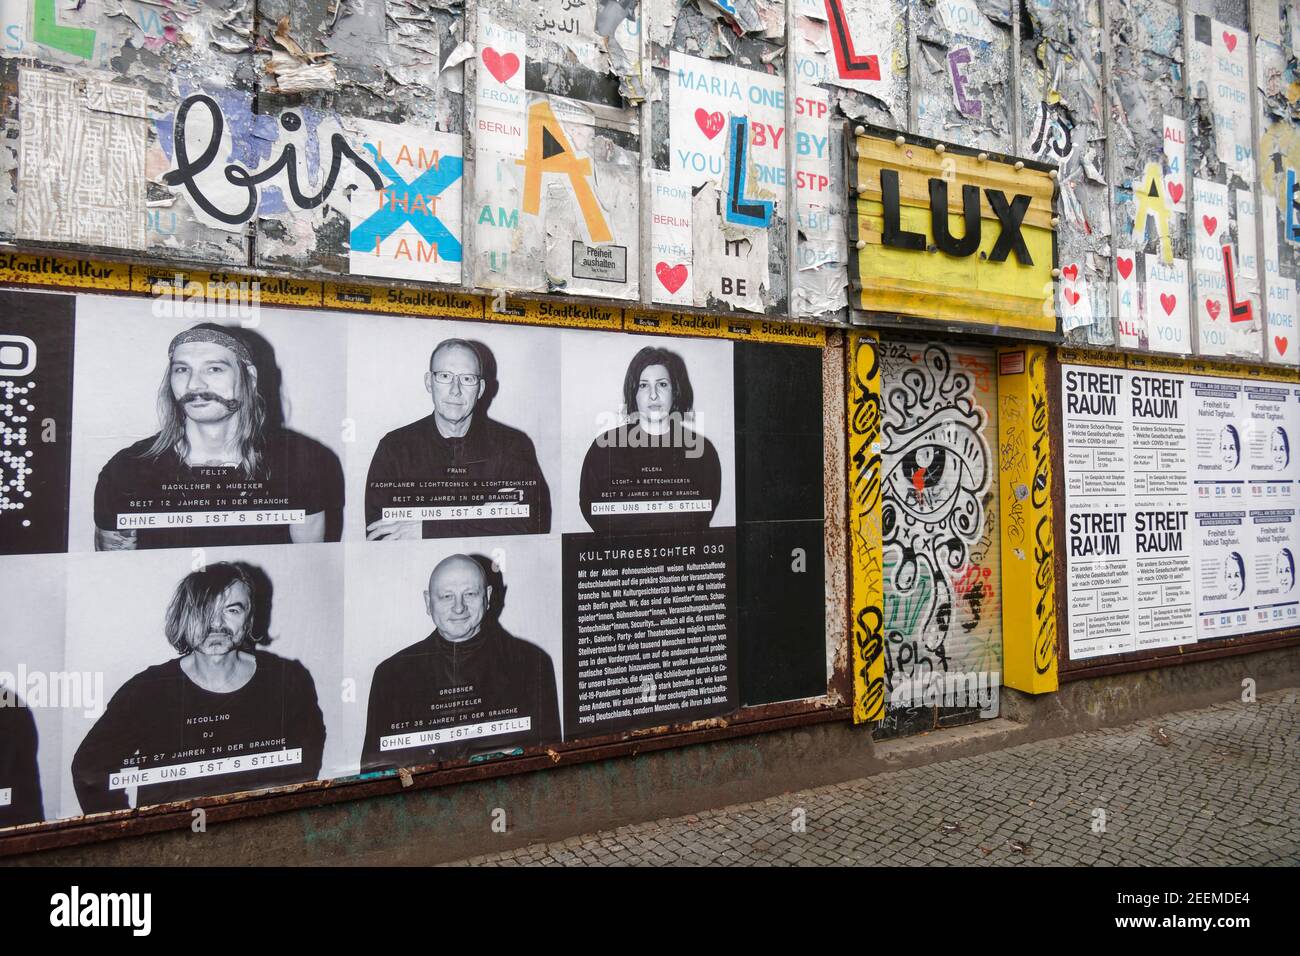 Lockdown während der Corona-Pandemie, geschlossener Club Lux an der Schlesischen Strasse in Berlin-Kreuzberg, Bar, Club, Event-Location, Musuikhalle, Stock Photo